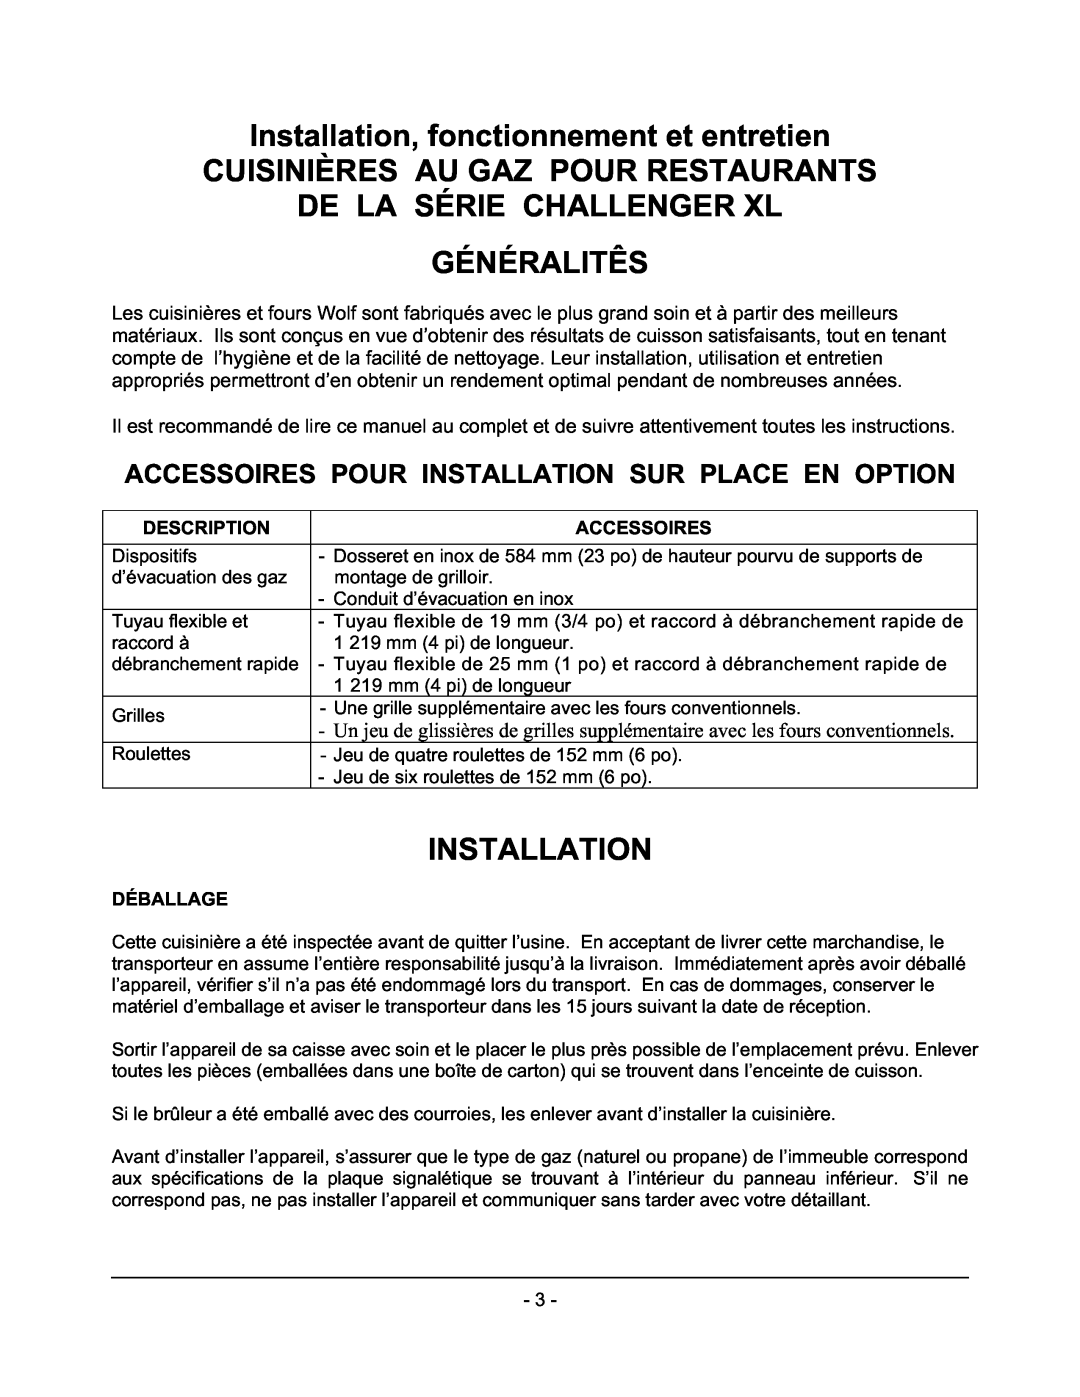 Wolf C36(S,C) Installation, fonctionnement et entretien, Cuisinières Au Gaz Pour Restaurants De La Série Challenger Xl 